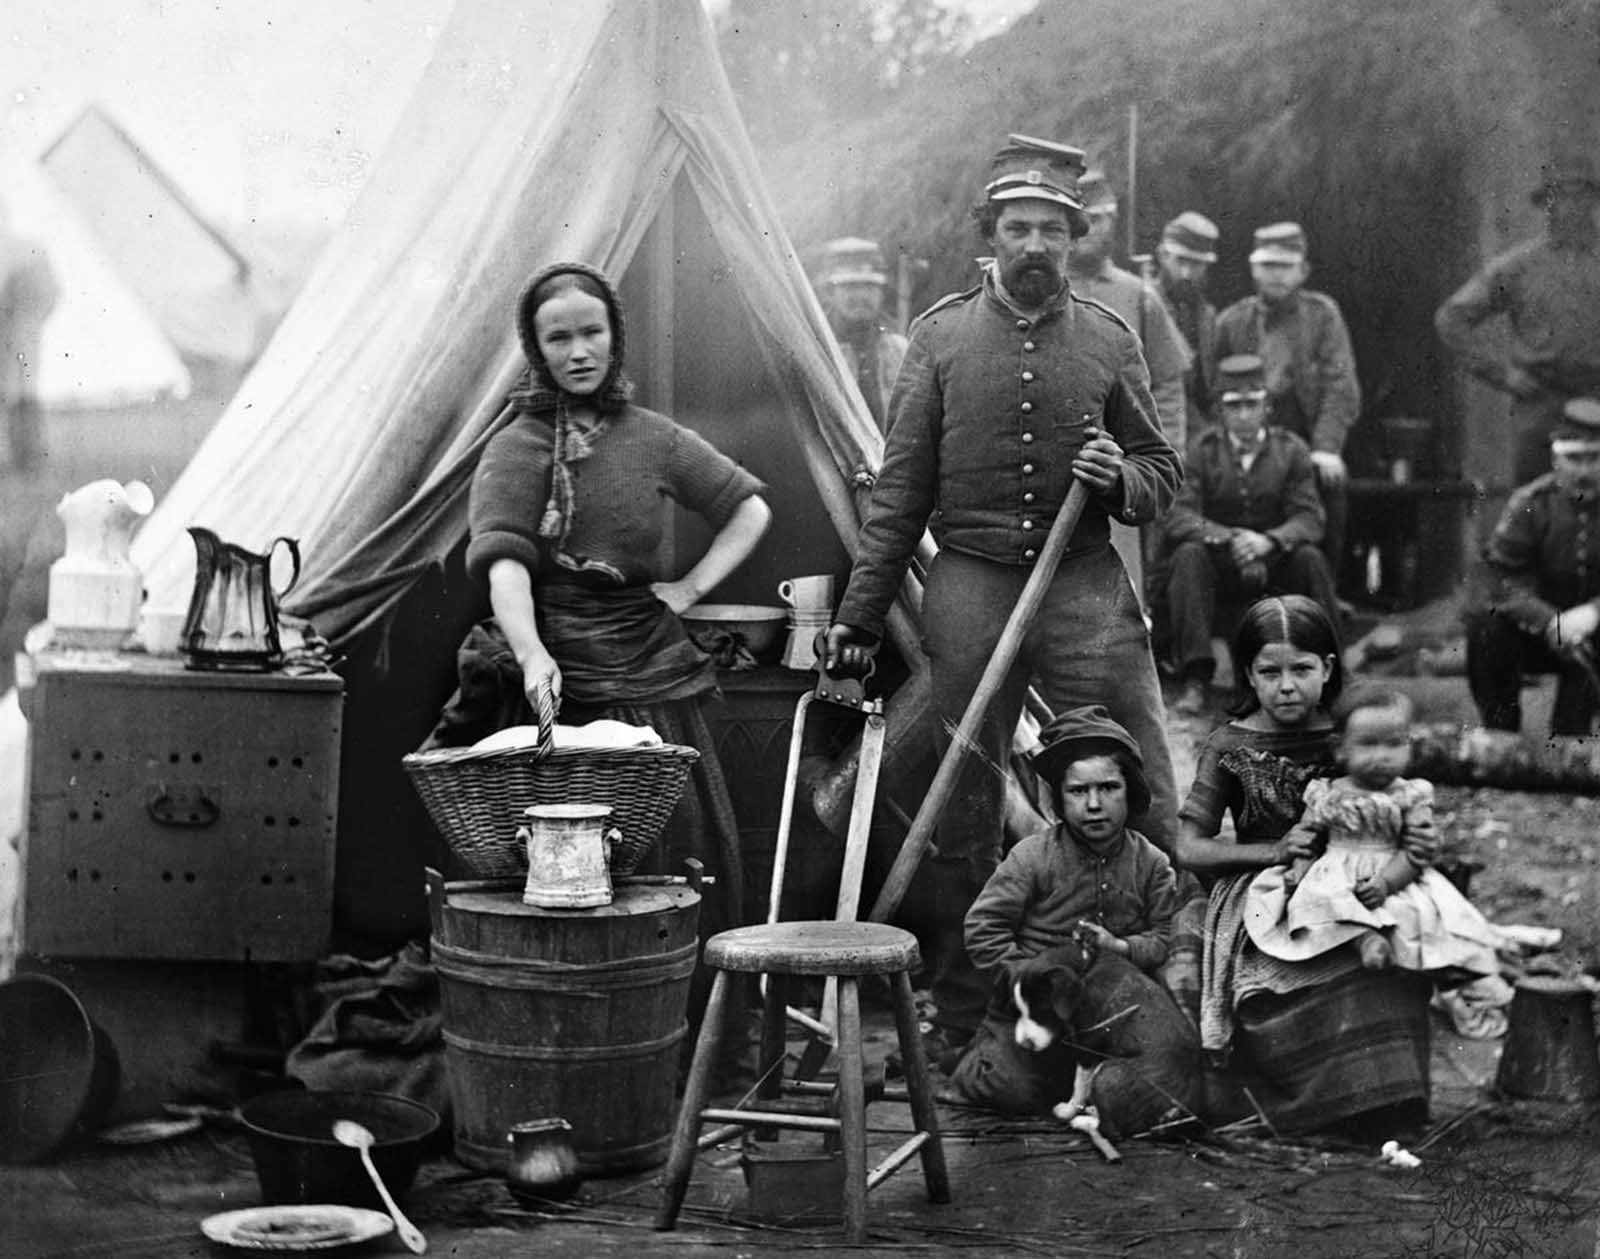 Повседневная жизнь в лагере 31-го пенсильванского полка под Вашингтоном, округ Колумбия, во времена Гражданской войны, 1861 г.